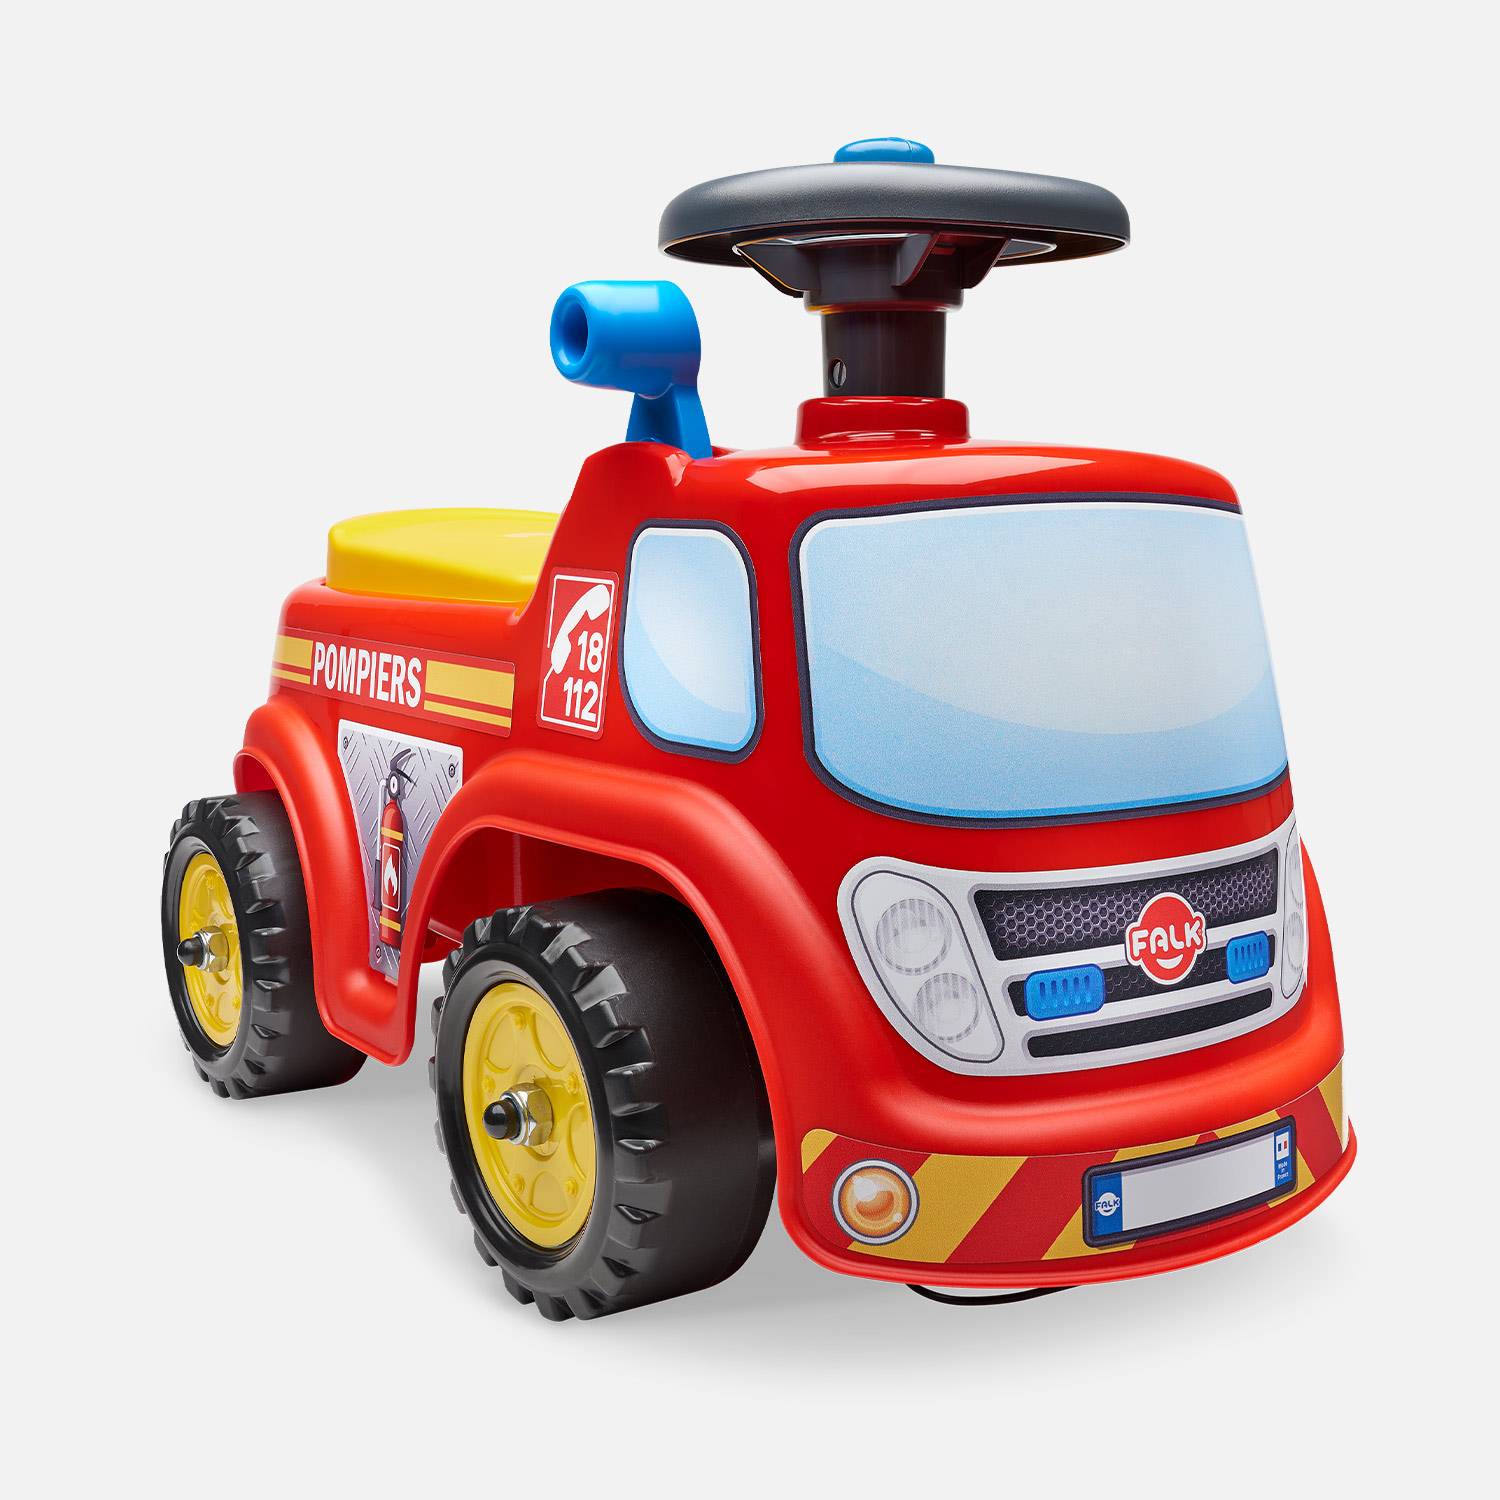 Babyrutscher Feuerwehrwagen mit aufklappbaren Sitz und Lenkrad, mit Hupe, 100% Made in France Photo1